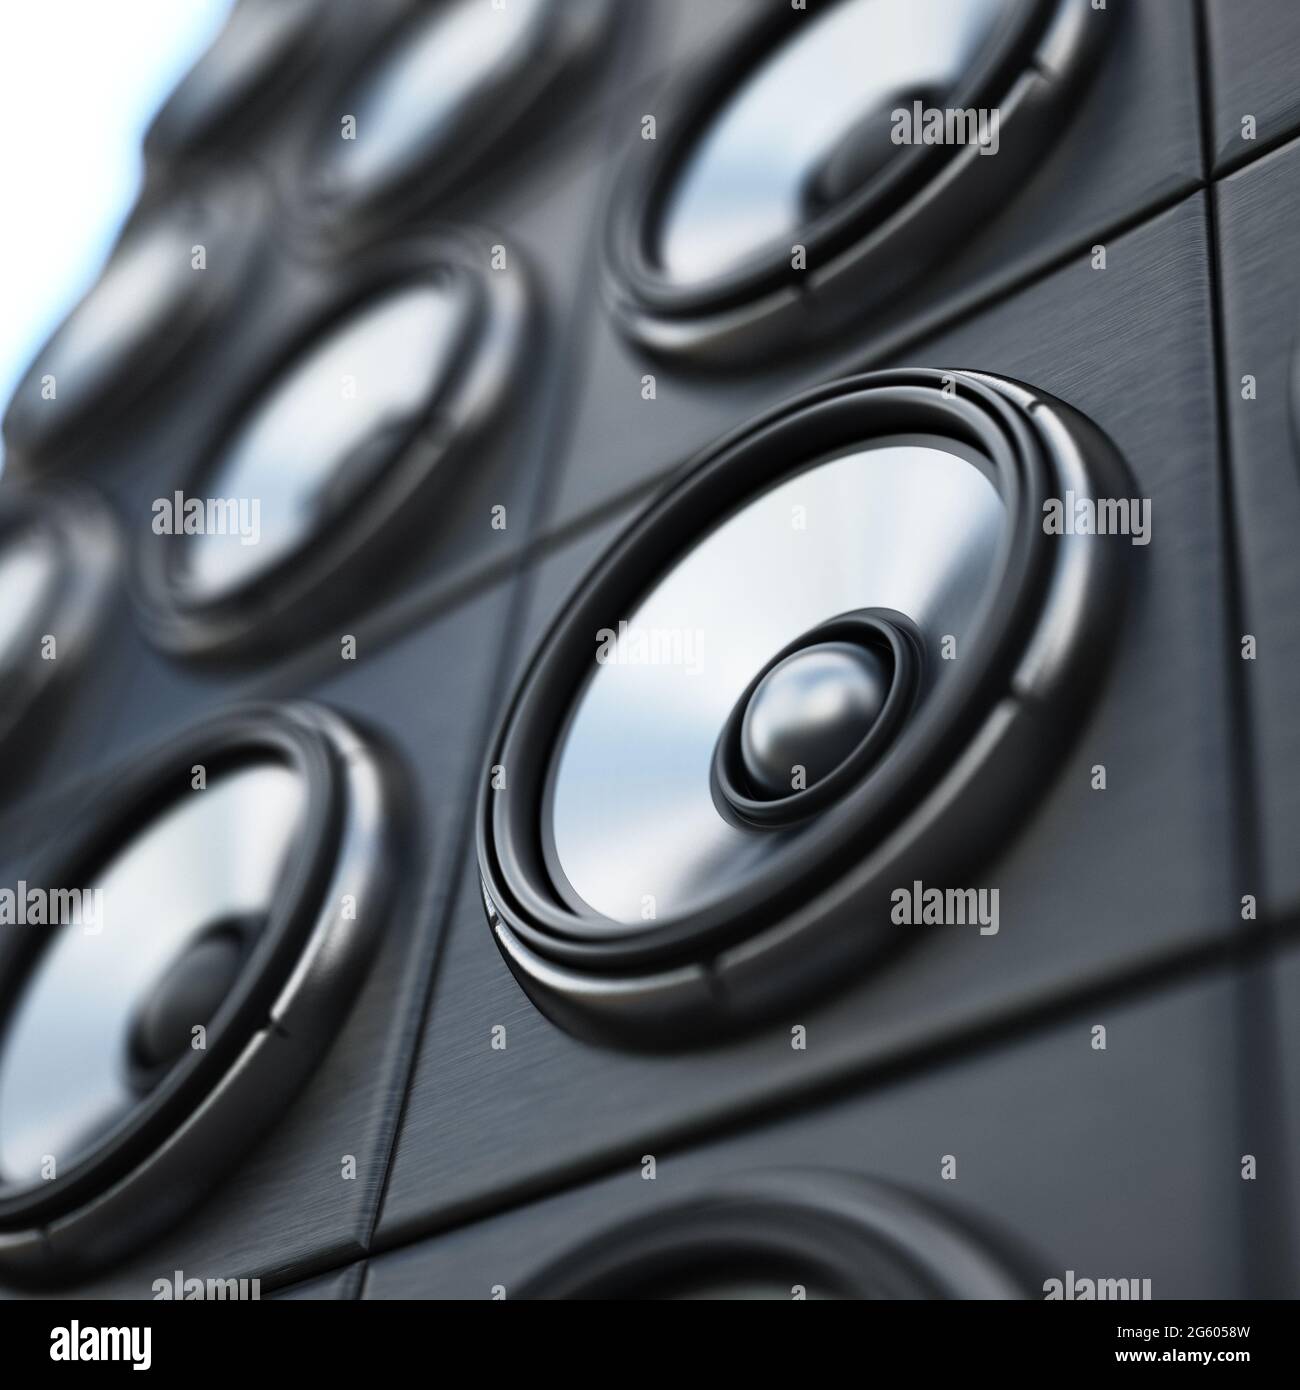 Gruppe von schwarzen und silbernen Lautsprechern. 3D-Illustration. Stockfoto